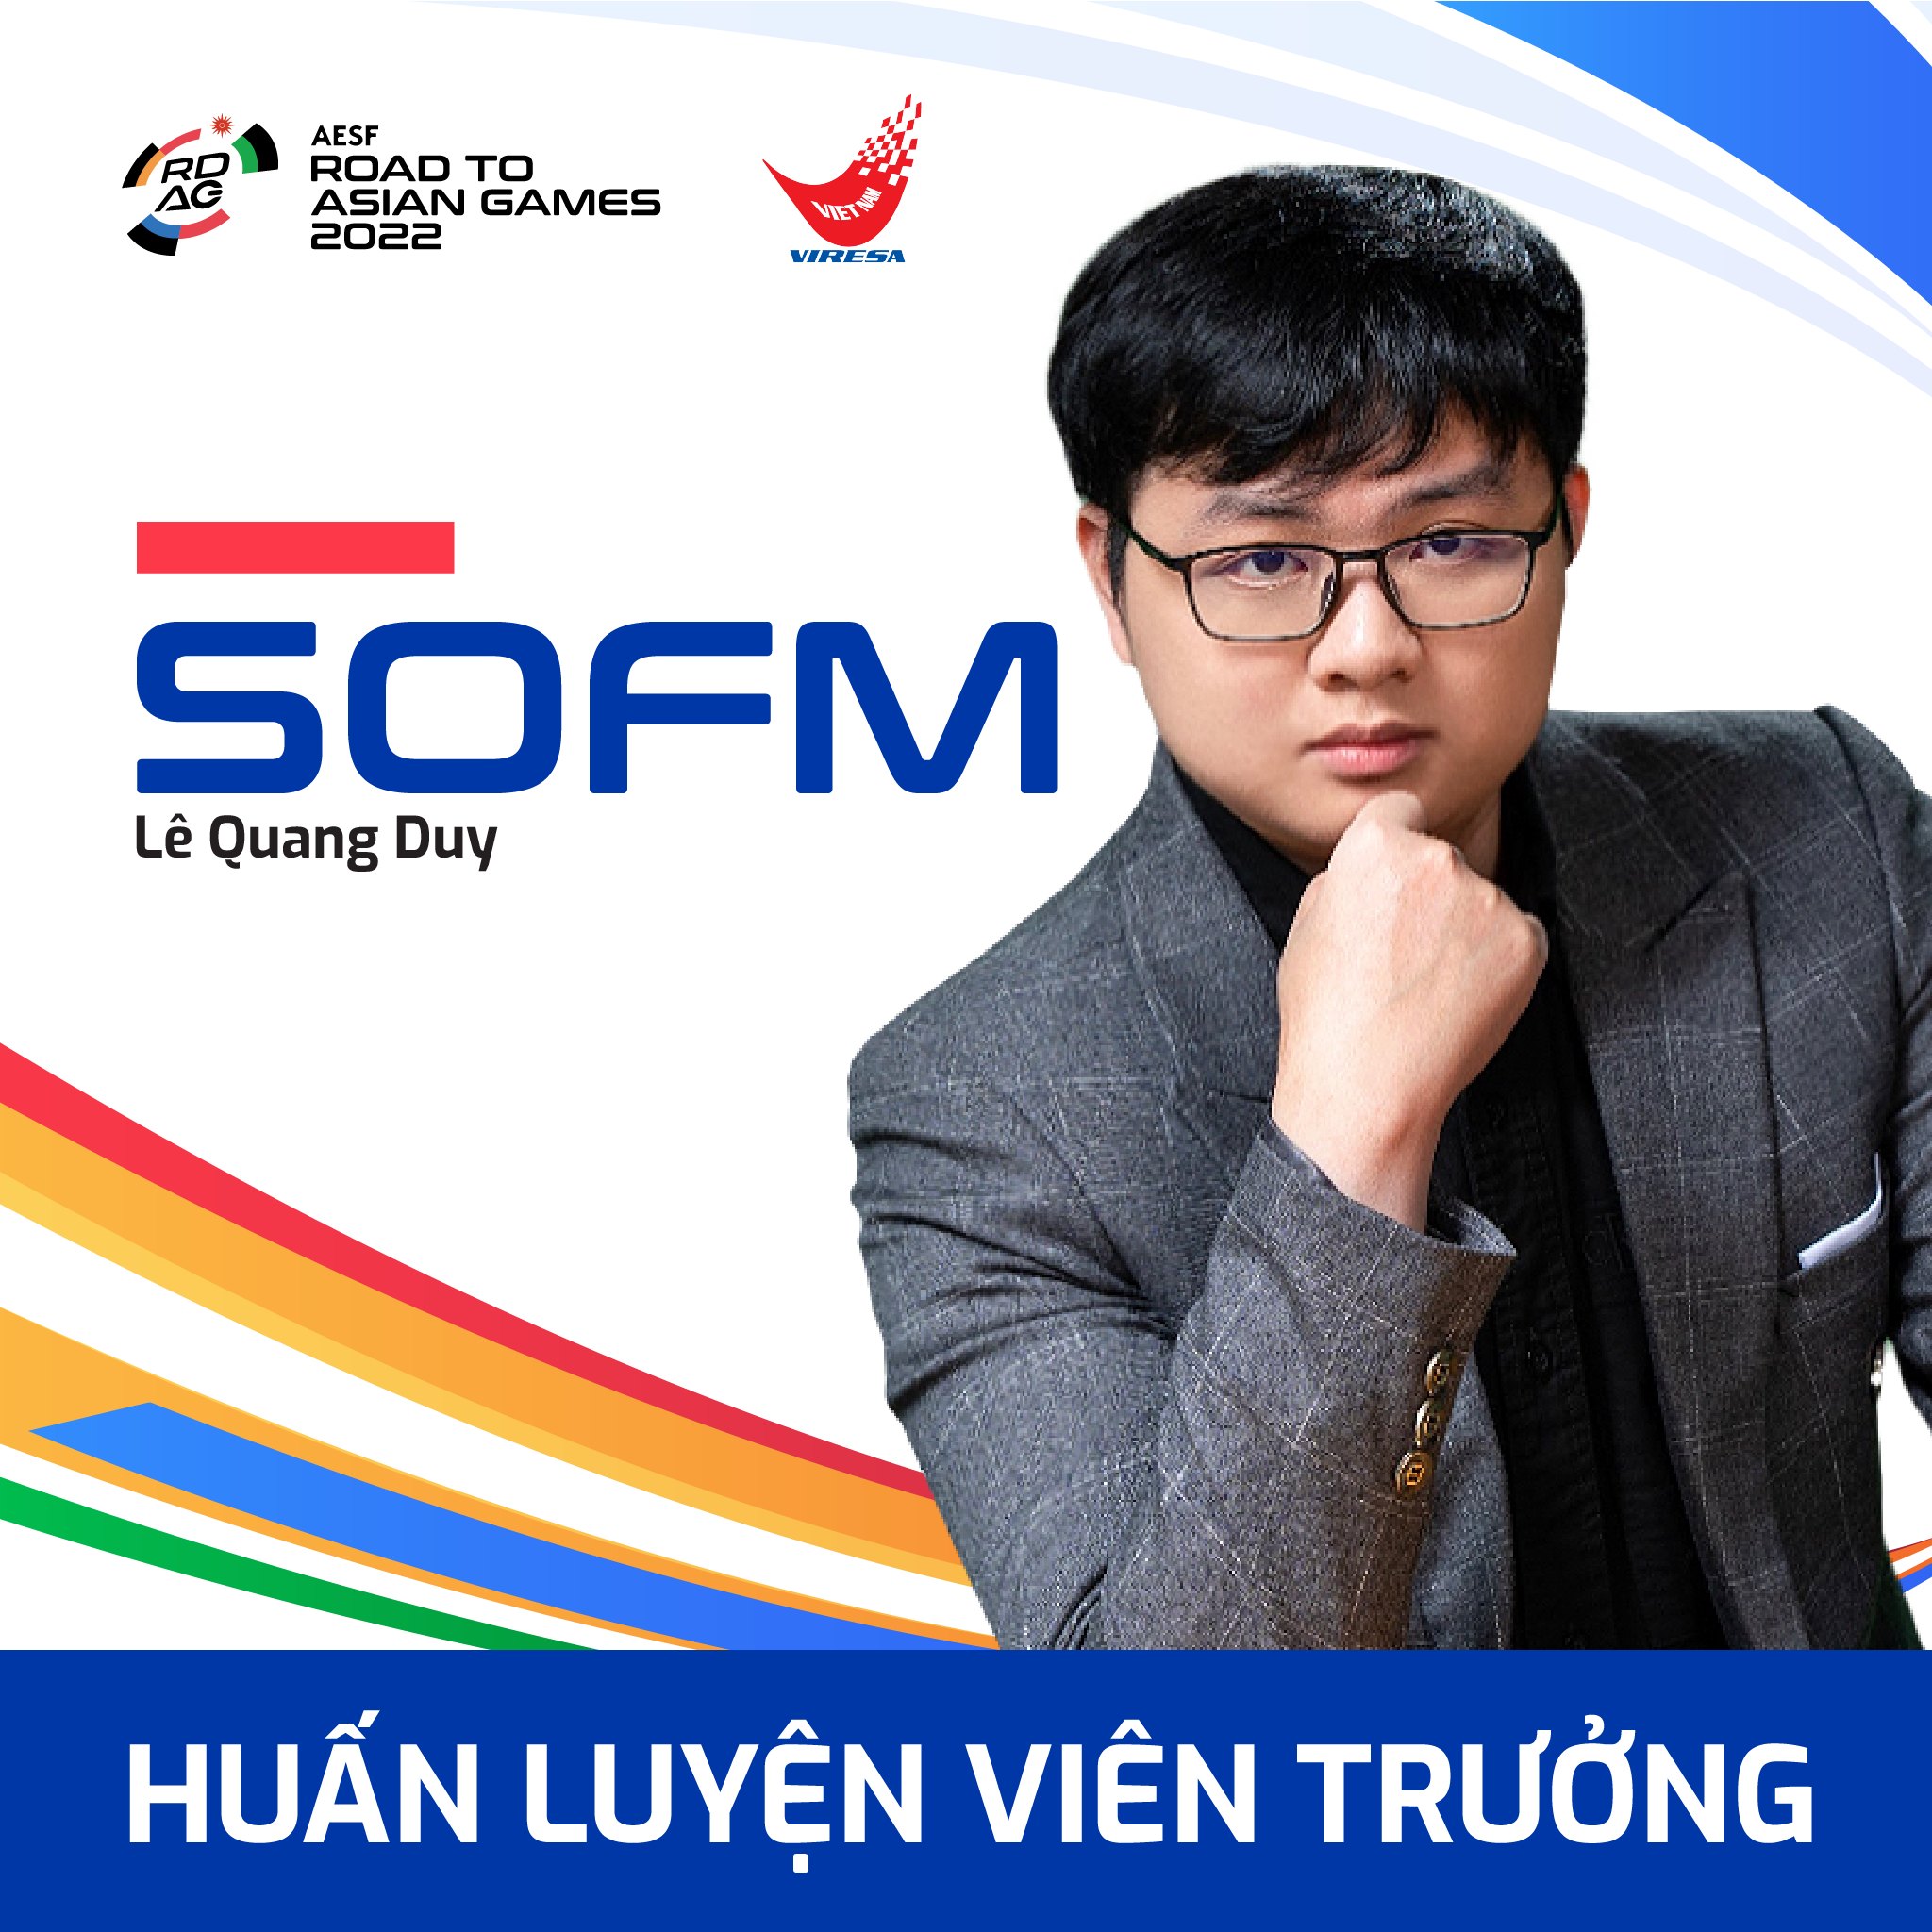 SofM là HLV dẫn dắt tuyển thể thao điện tử quốc gia Việt Nam